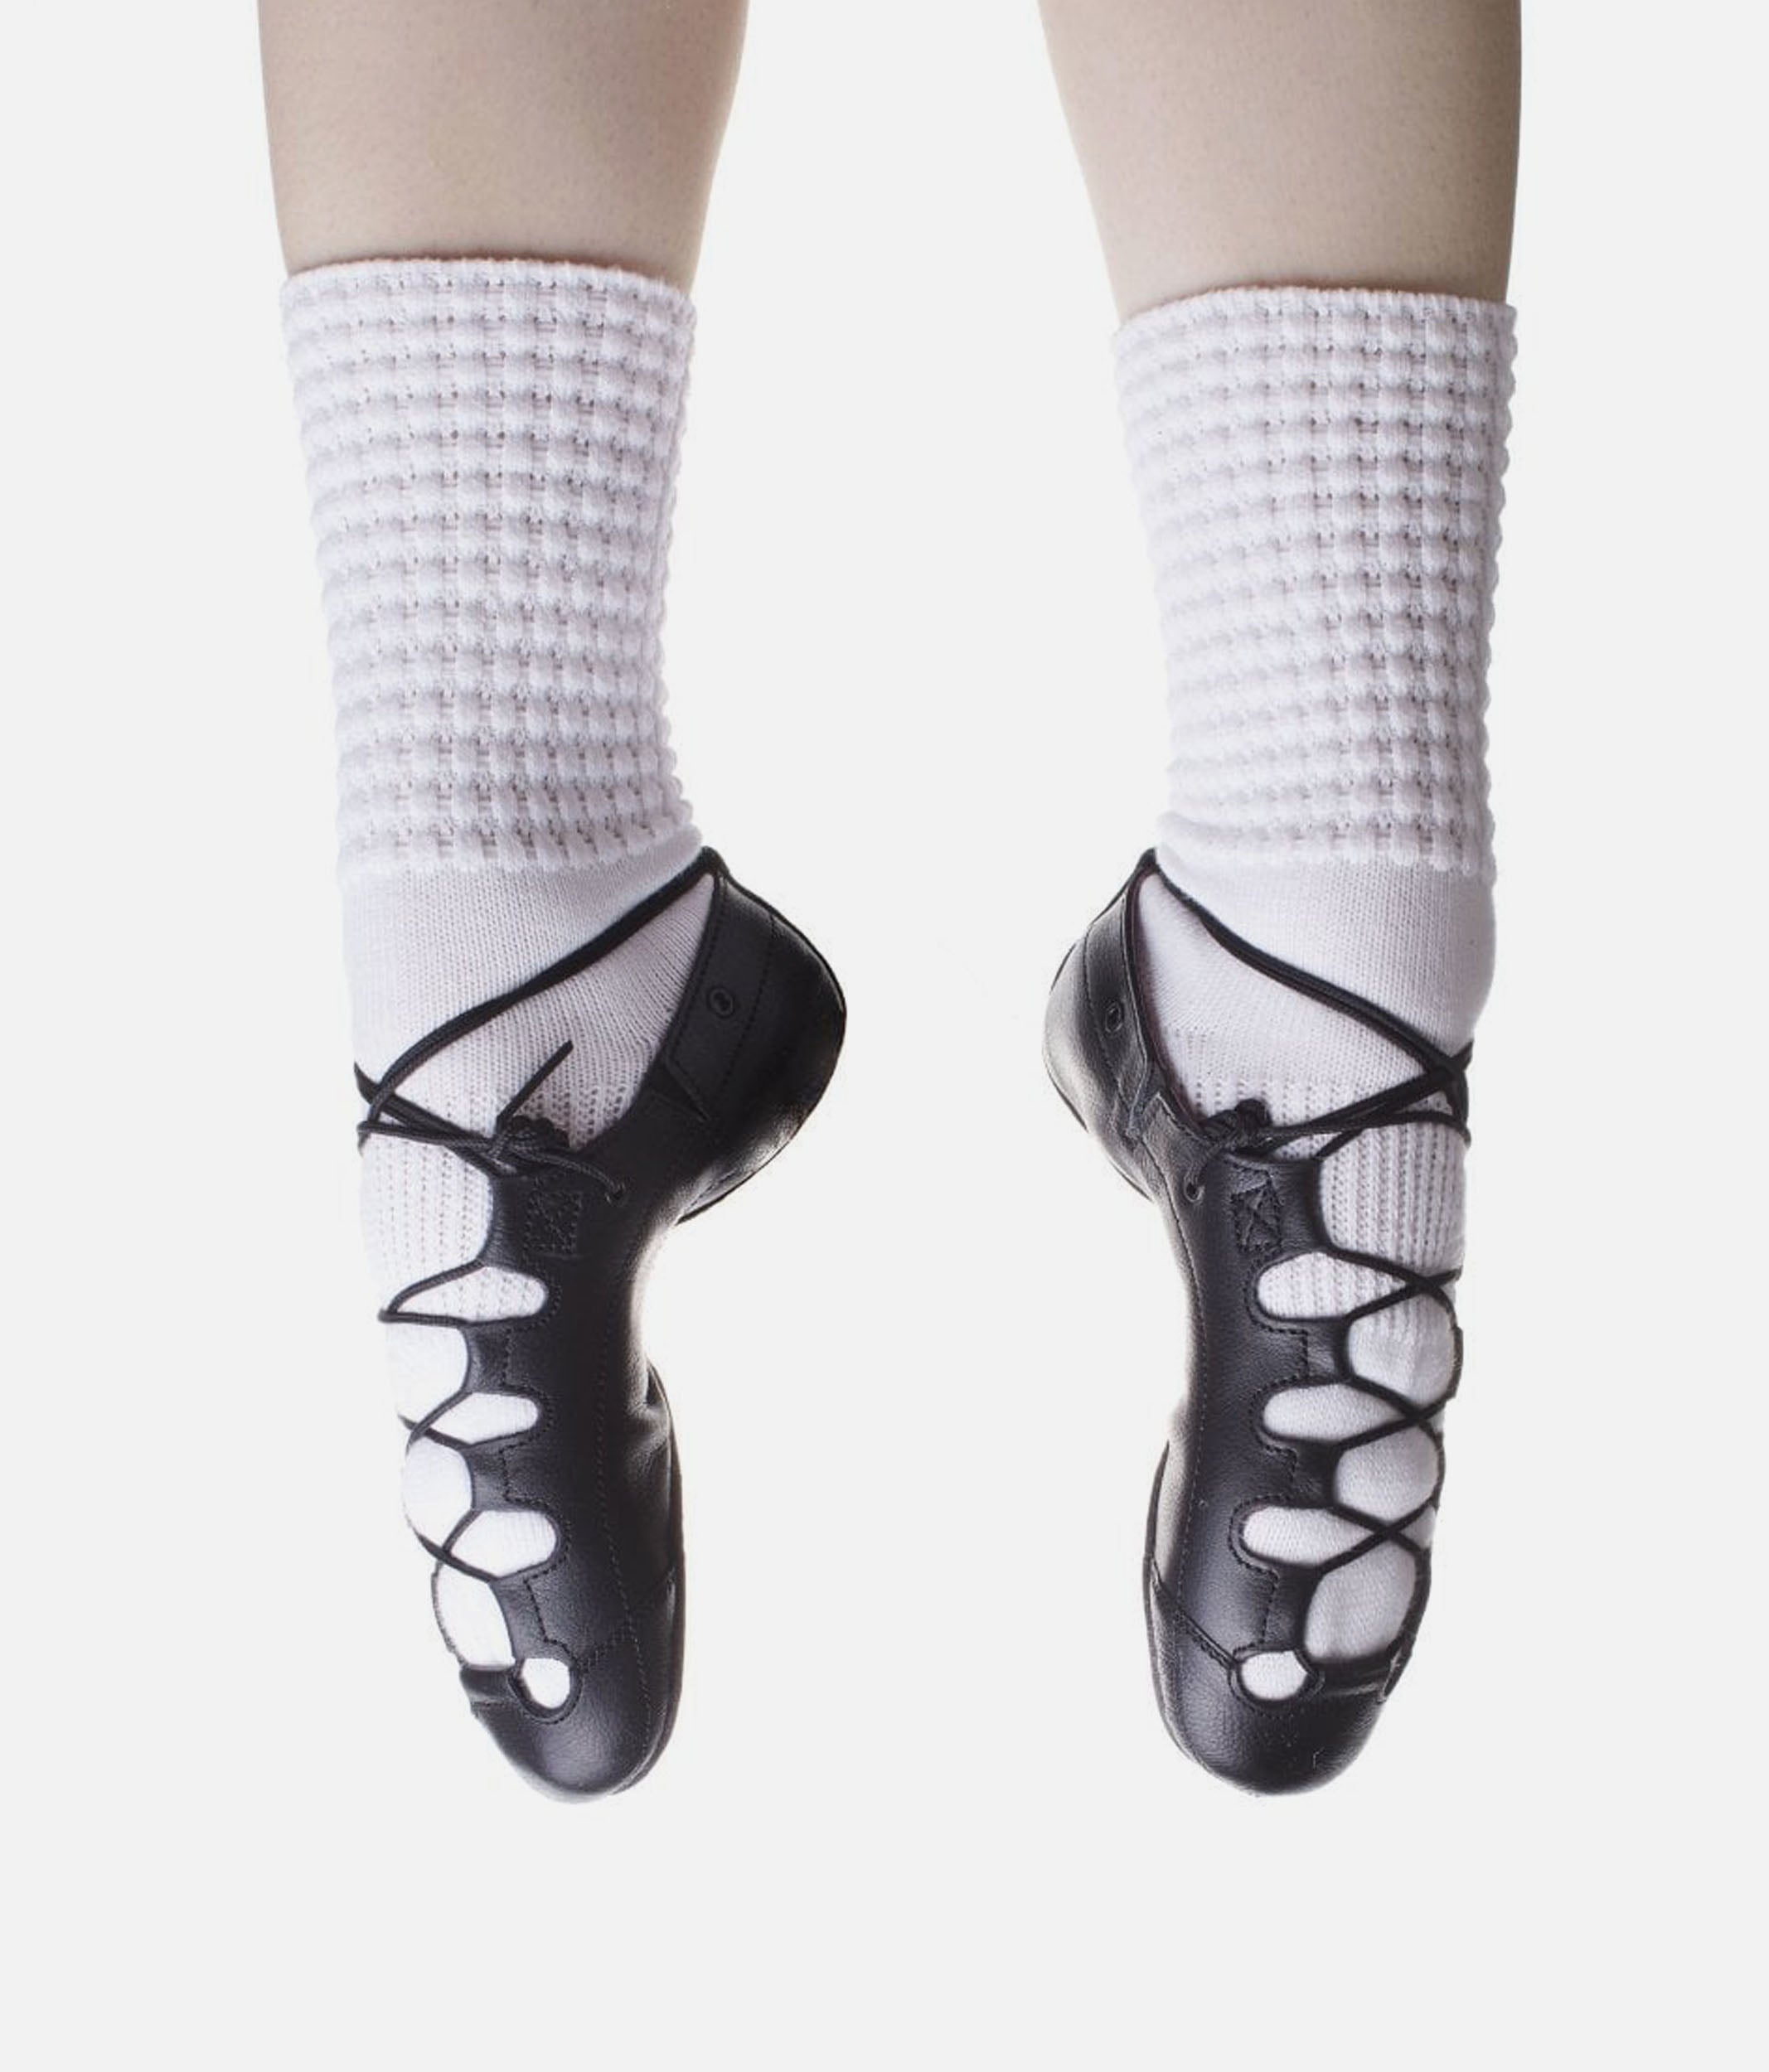 Irish Dance Gillies Tall White Socks Stock Photo 2357601905